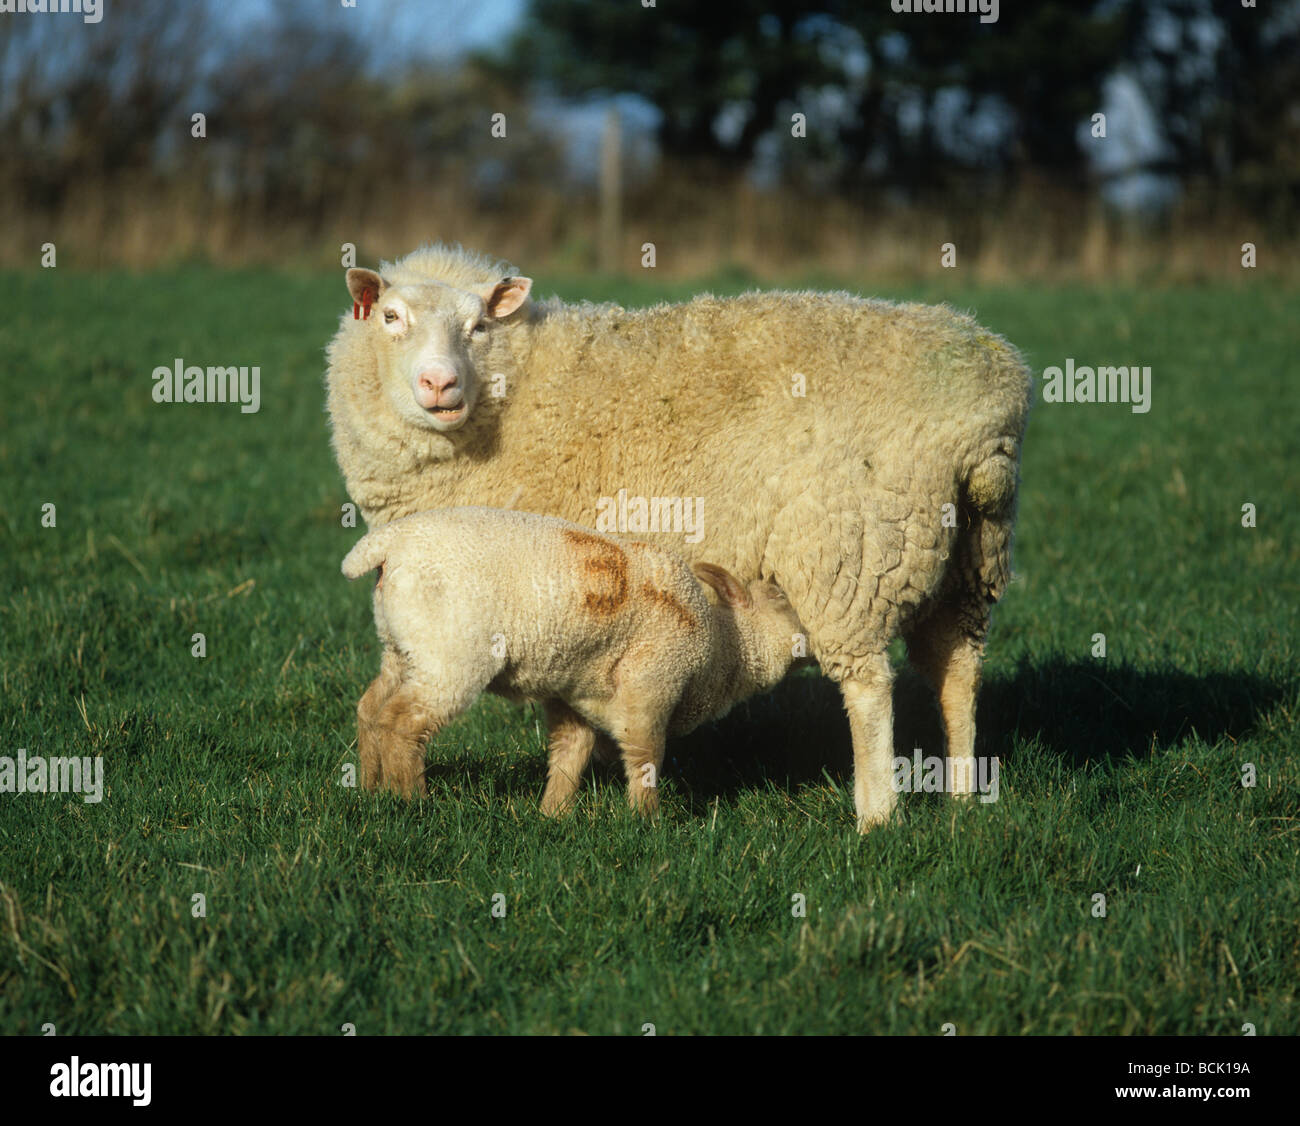 Rouge de L'Ouest X oveja con su cordero lechal Foto de stock